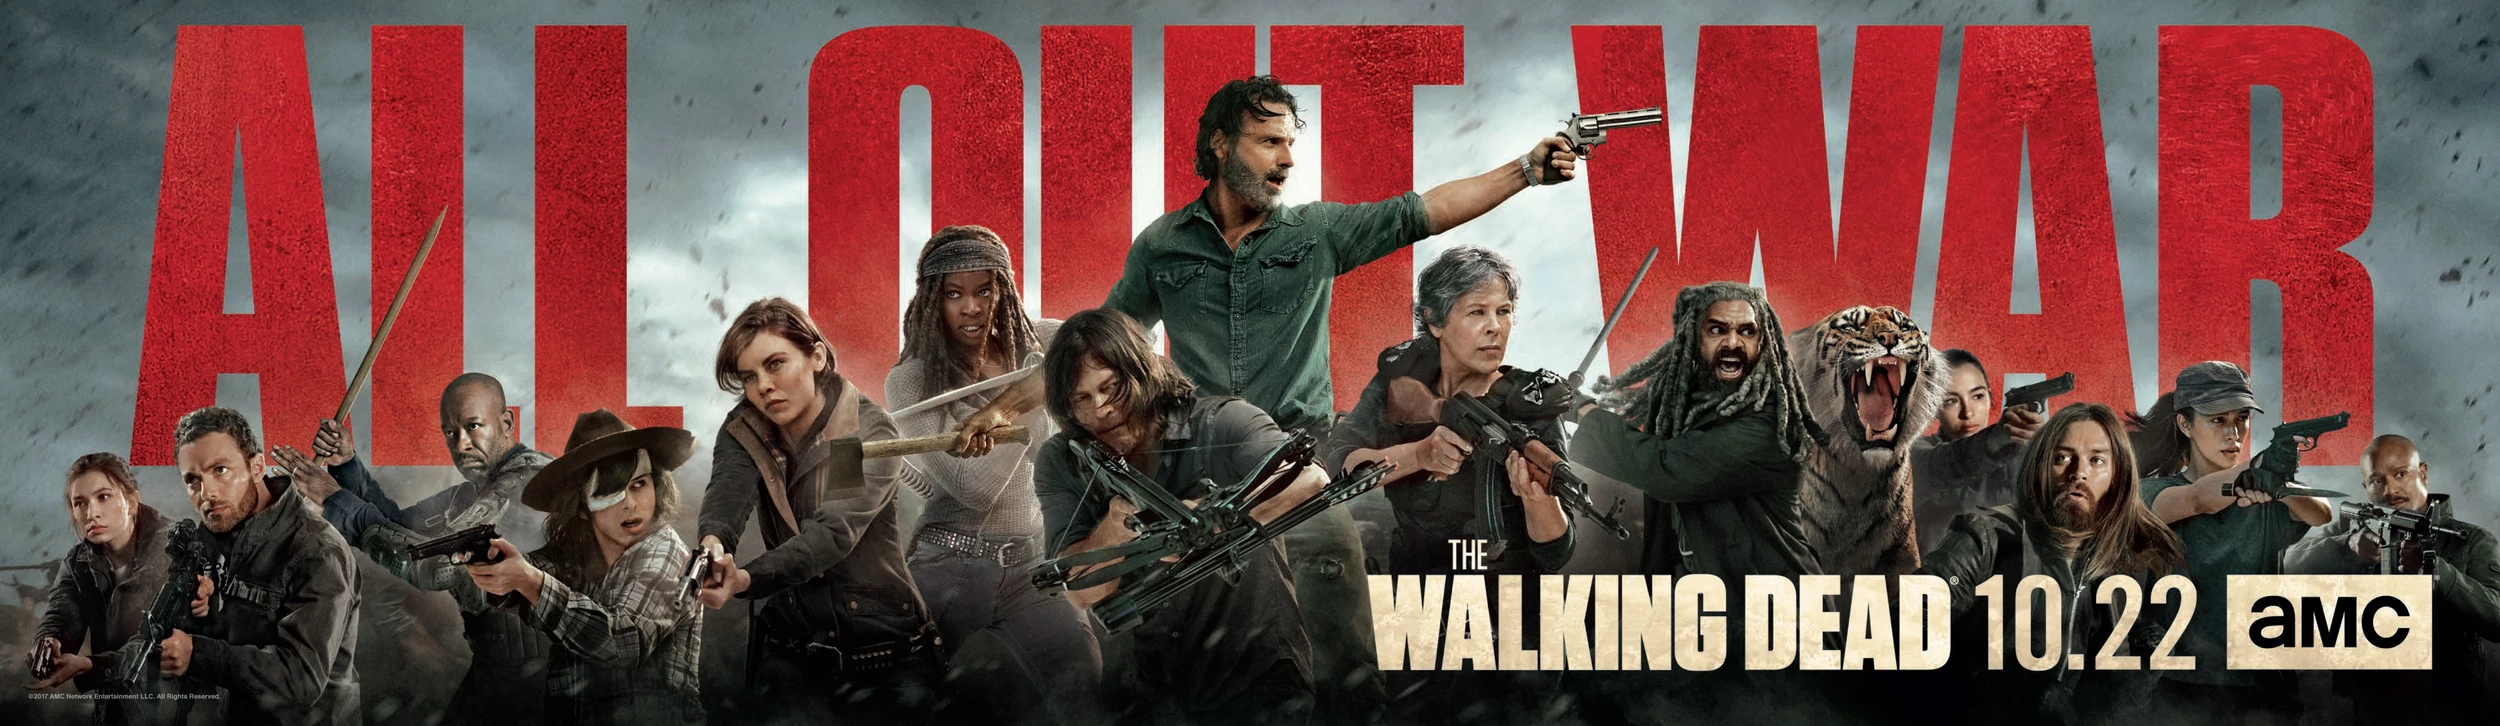 Walking Dead' Season 8 Key Art Teases 'All Out War'